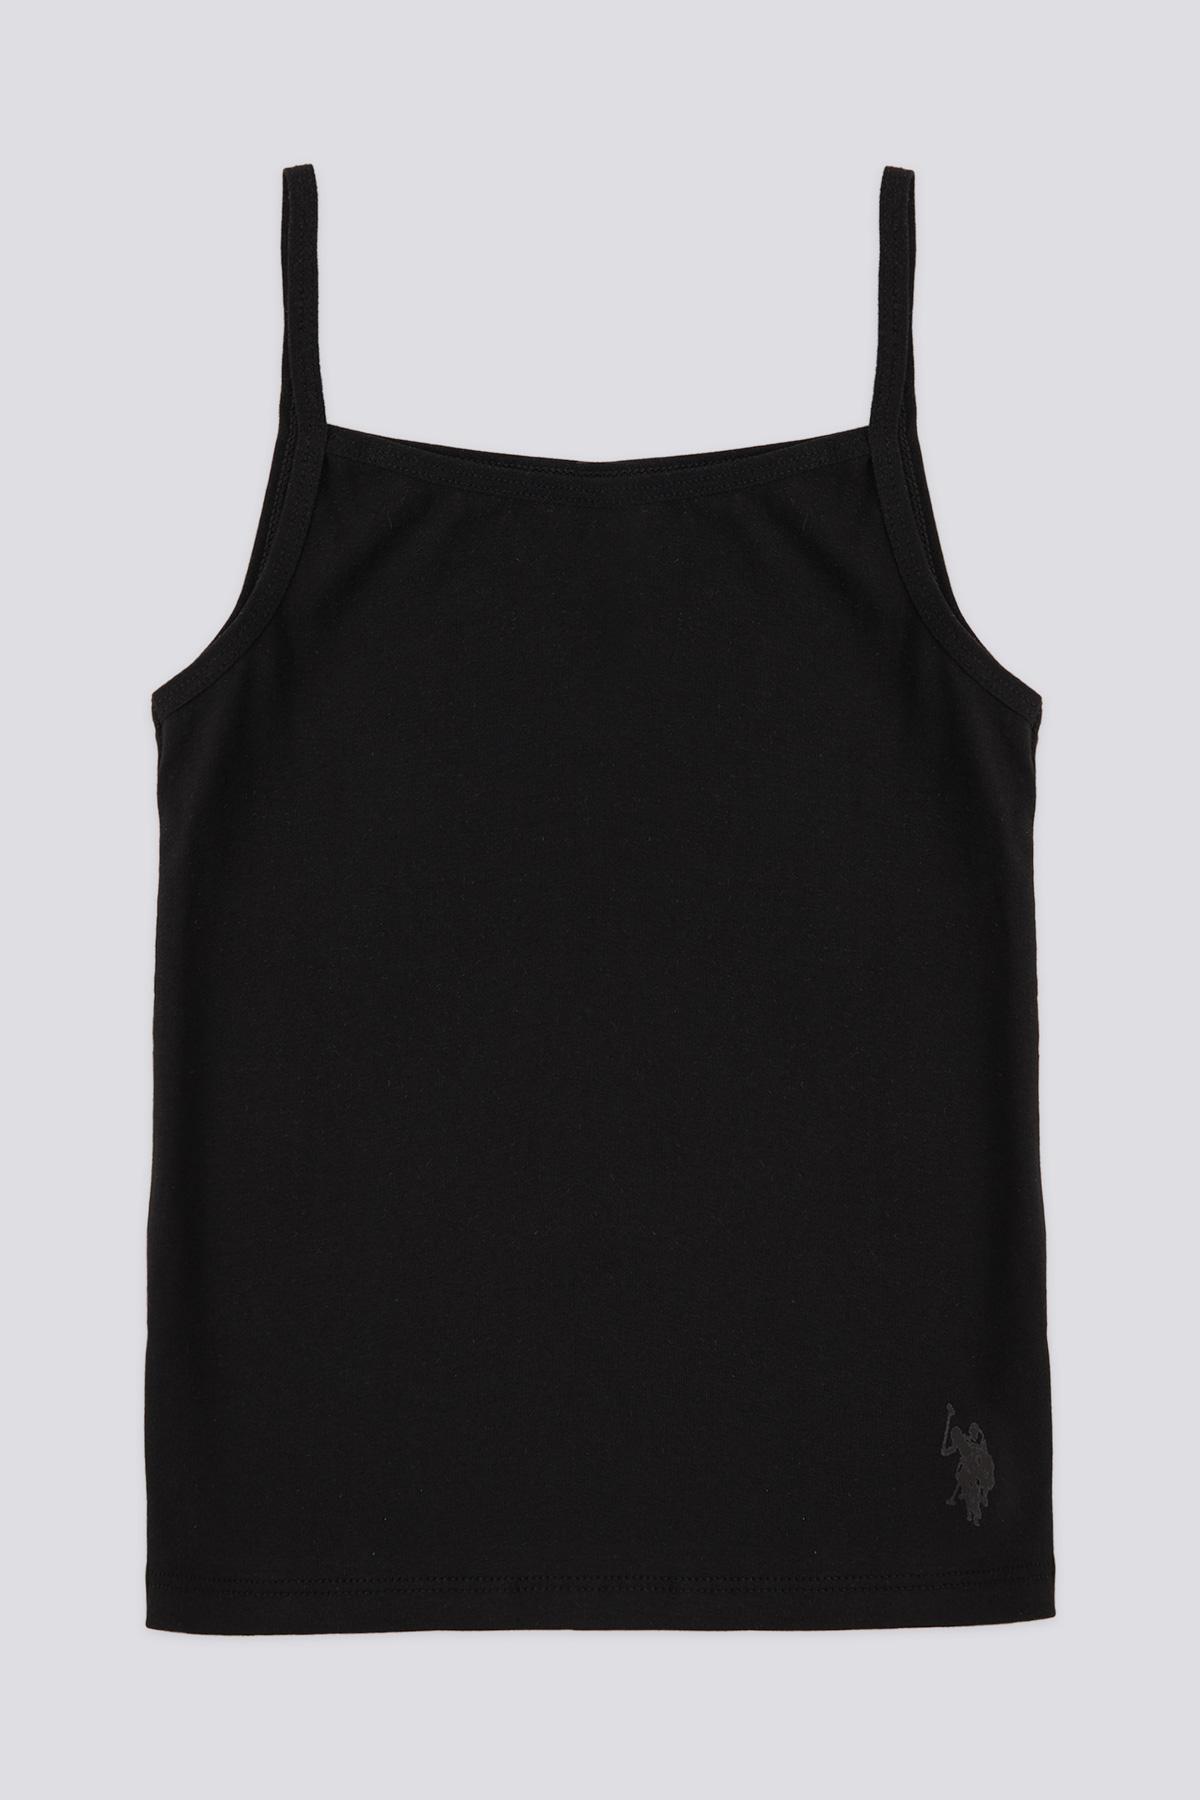 Selected image for U.S. Polo Assn. Set majica za devojčice US1672, 2 komada, Crna i bela